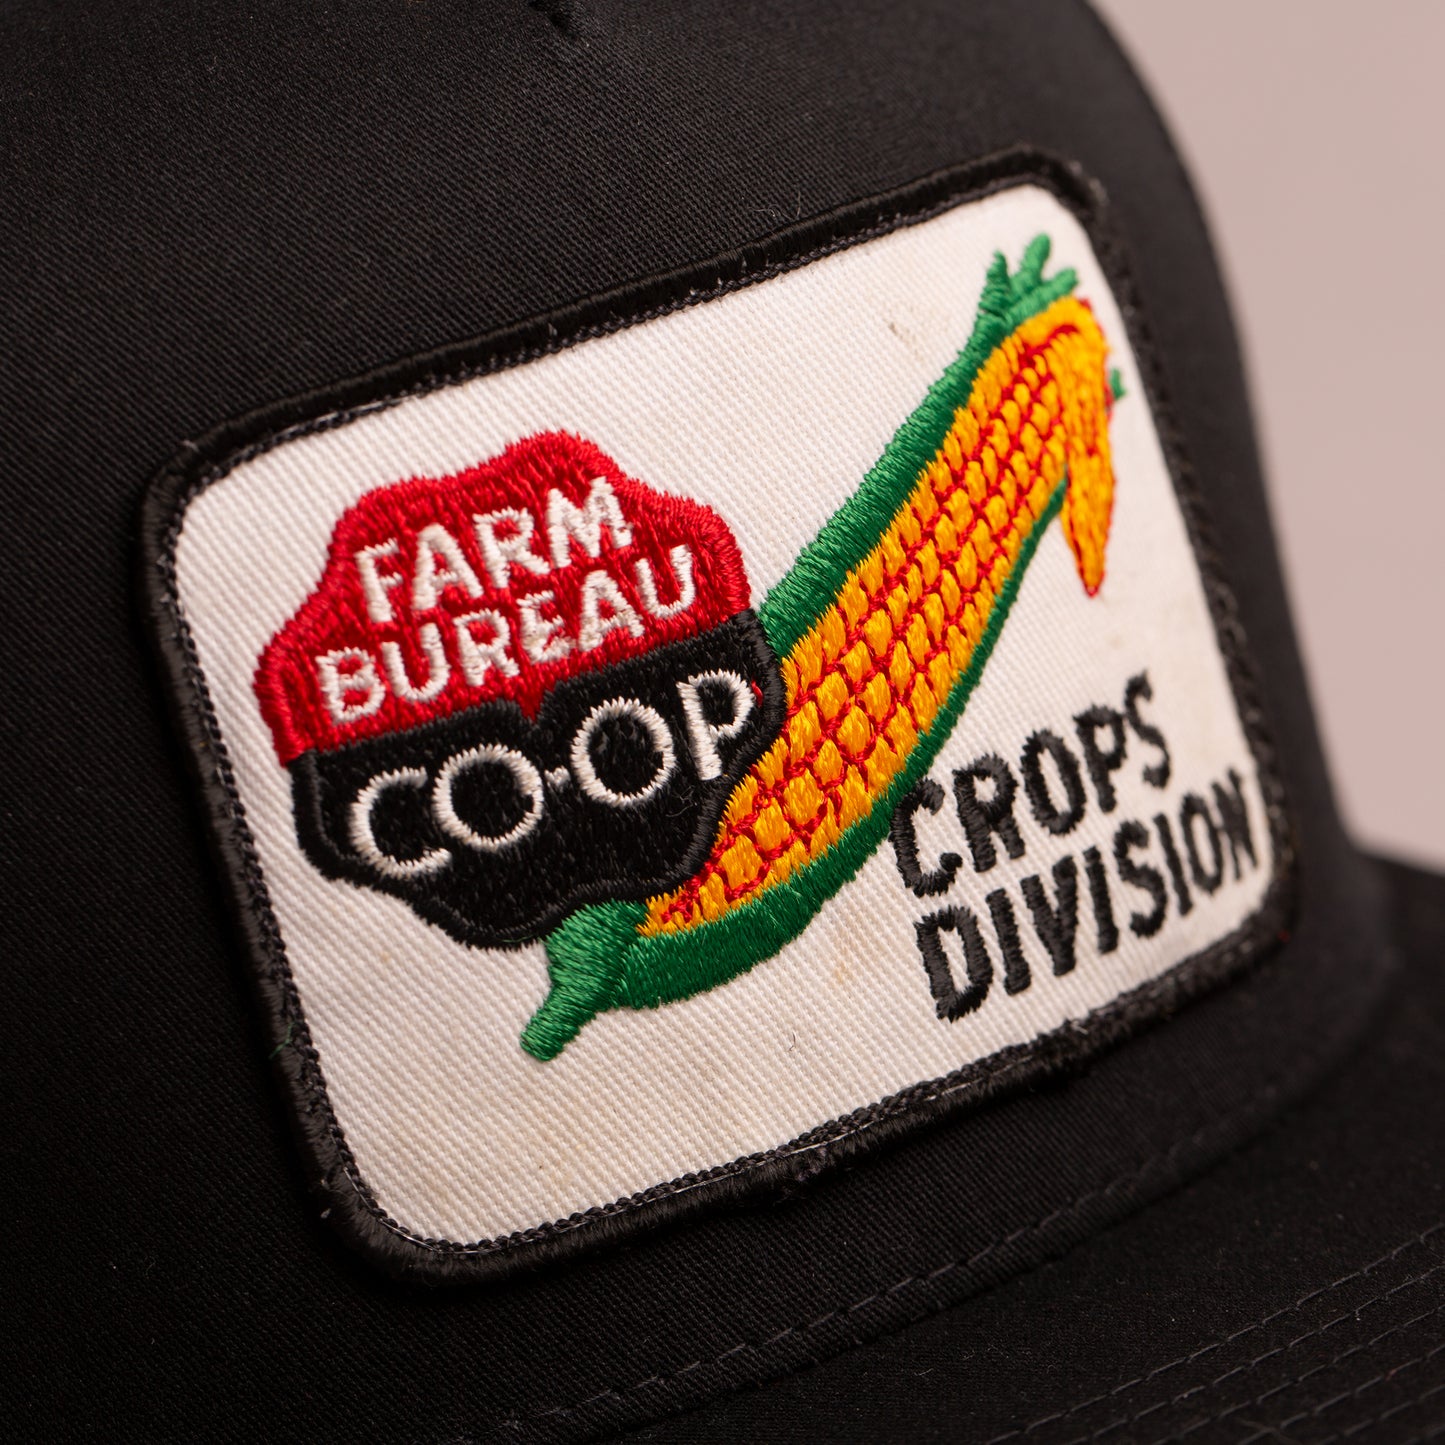 Farm Bureau Co-Op Crop Division